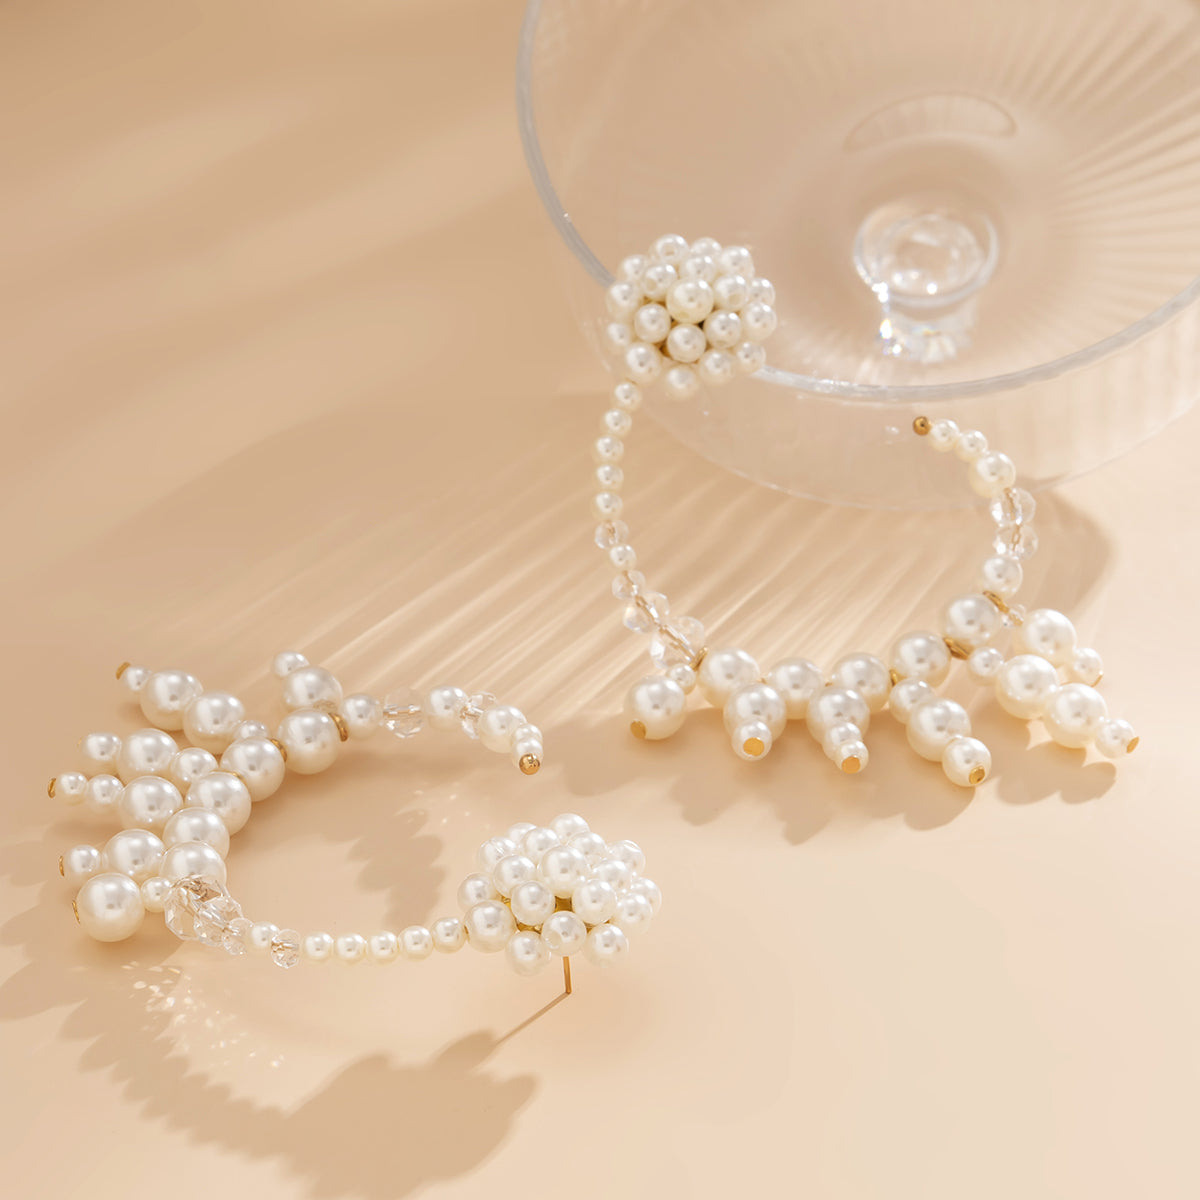 Pearl & 18K Gold-Plated C-Shape Tassel Drop Earrings